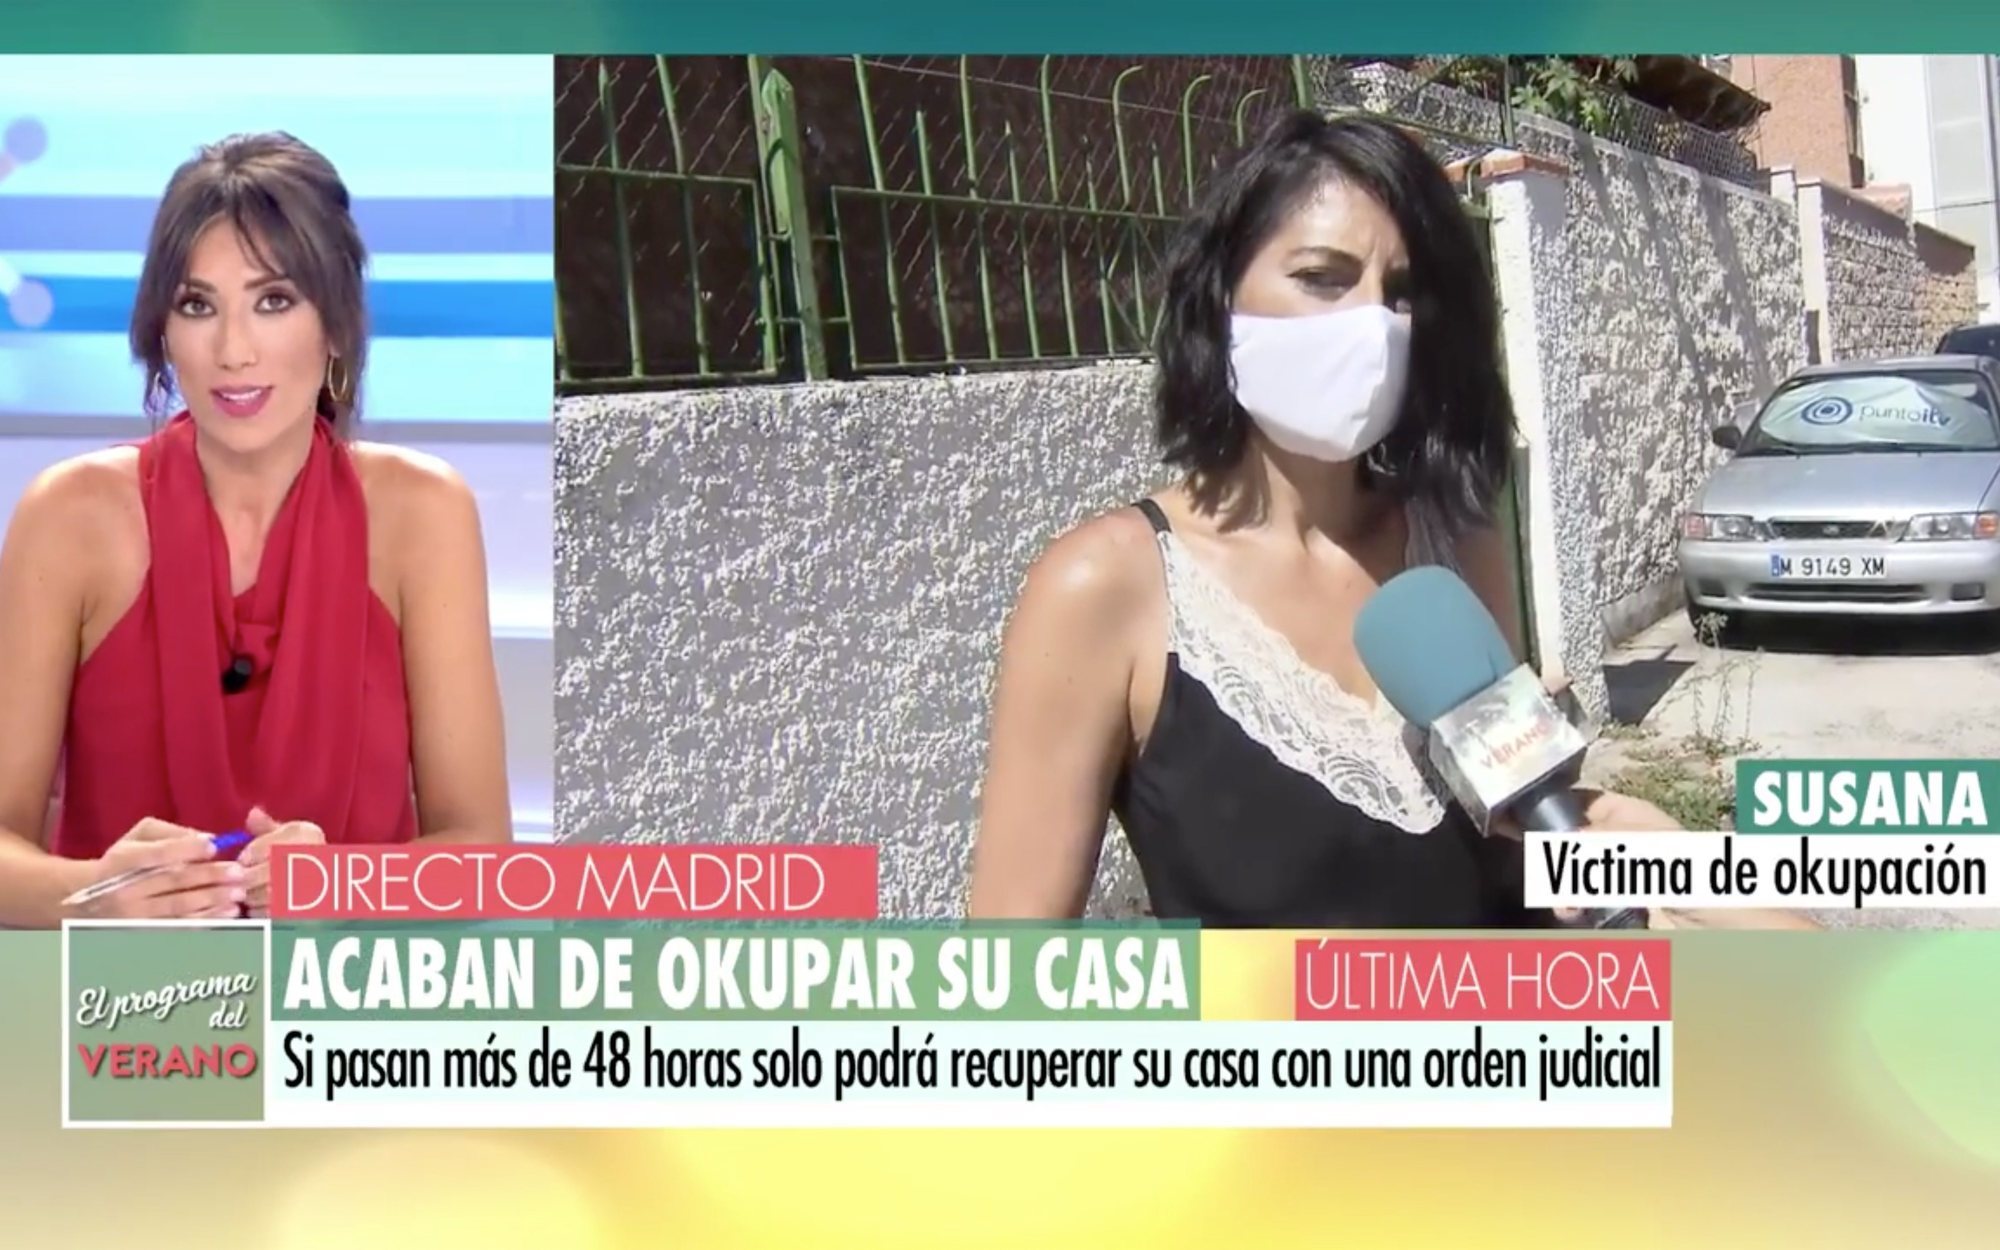 Okupan la casa de una periodista de 'Informativos Telecinco' y le exigen 1.500 euros por recuperarla